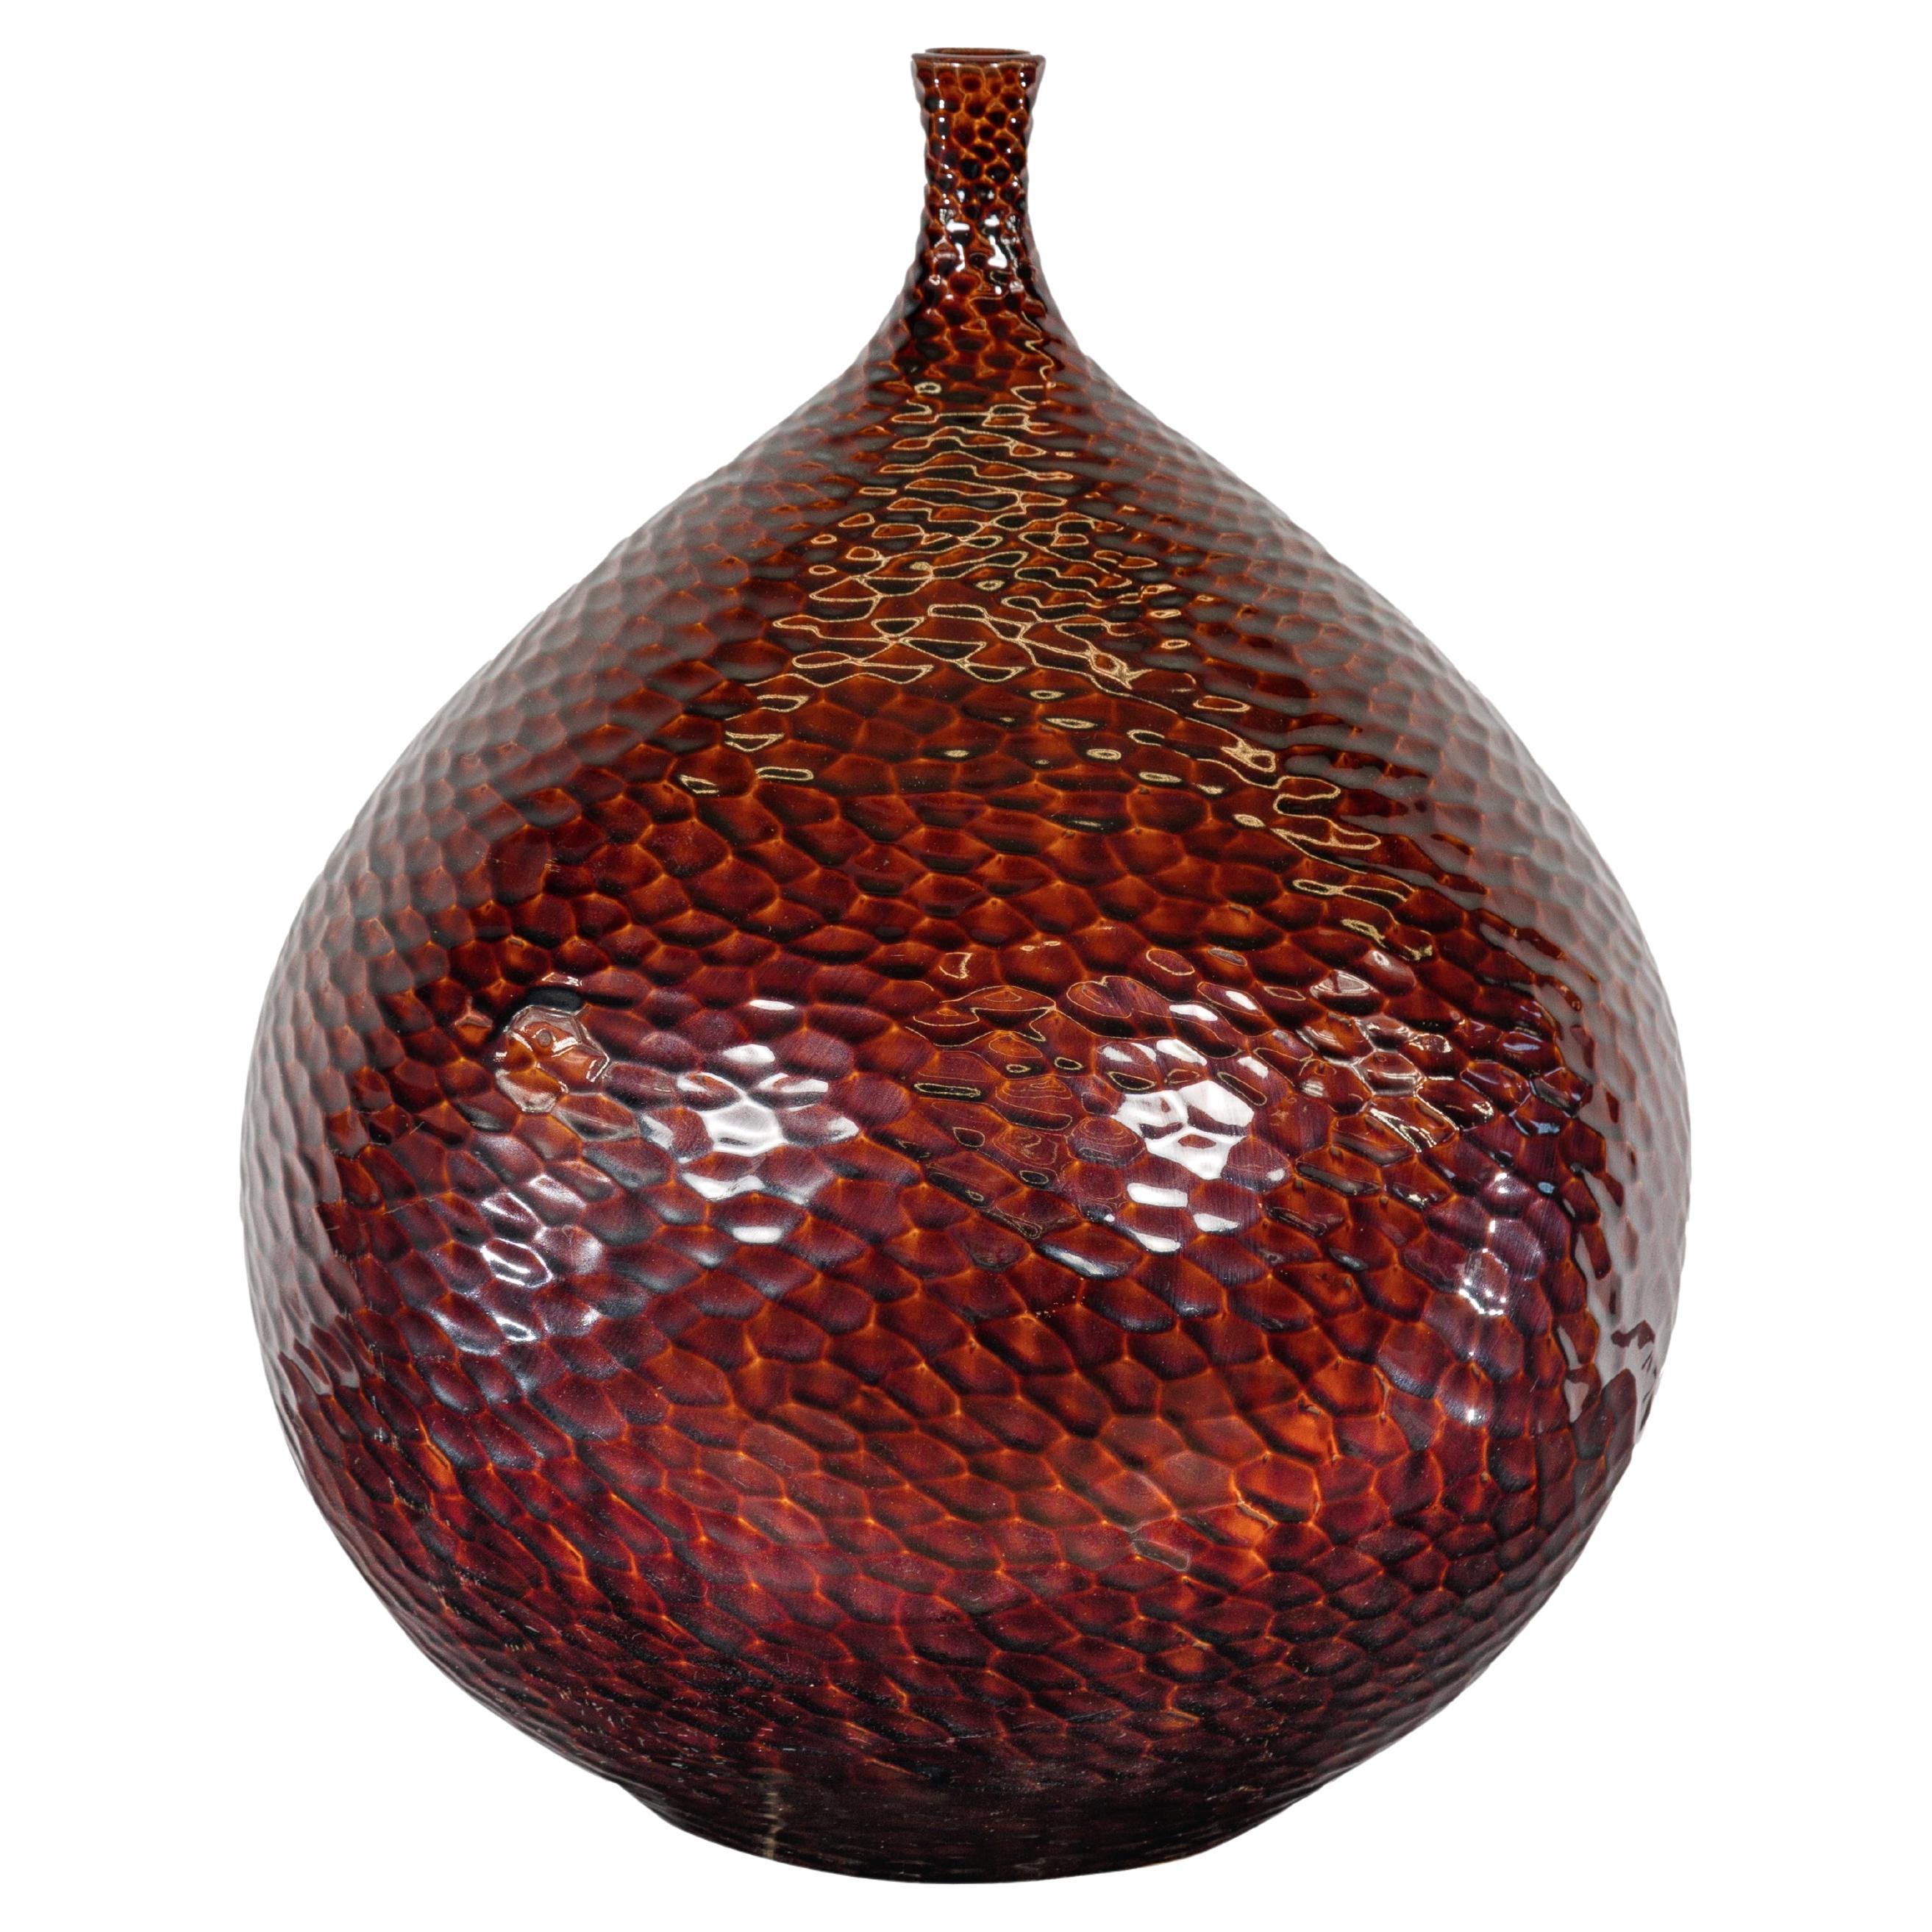 Vase bourgogne en forme de bulbe avec motifs texturés en nid d'abeille, fabriqué à la main